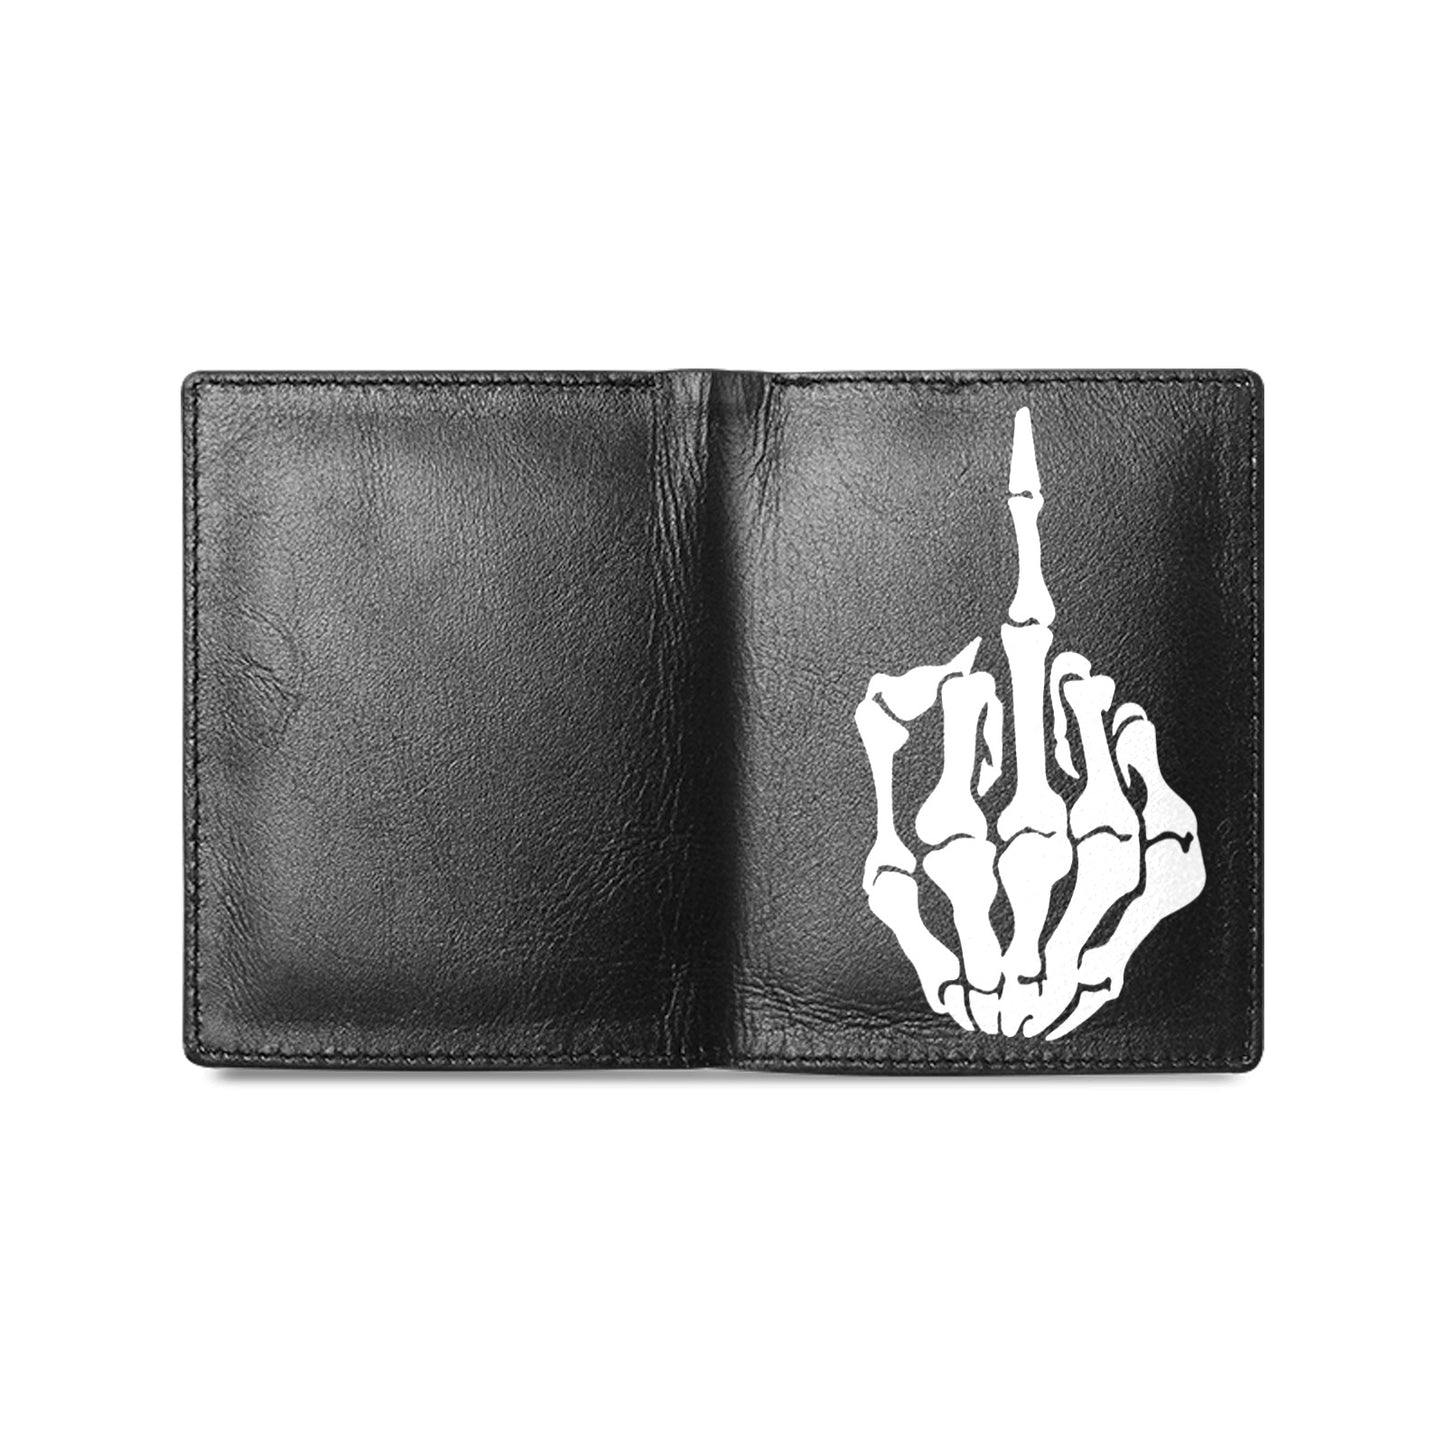 Skeleton Hand Middle Finger Leather Wallet